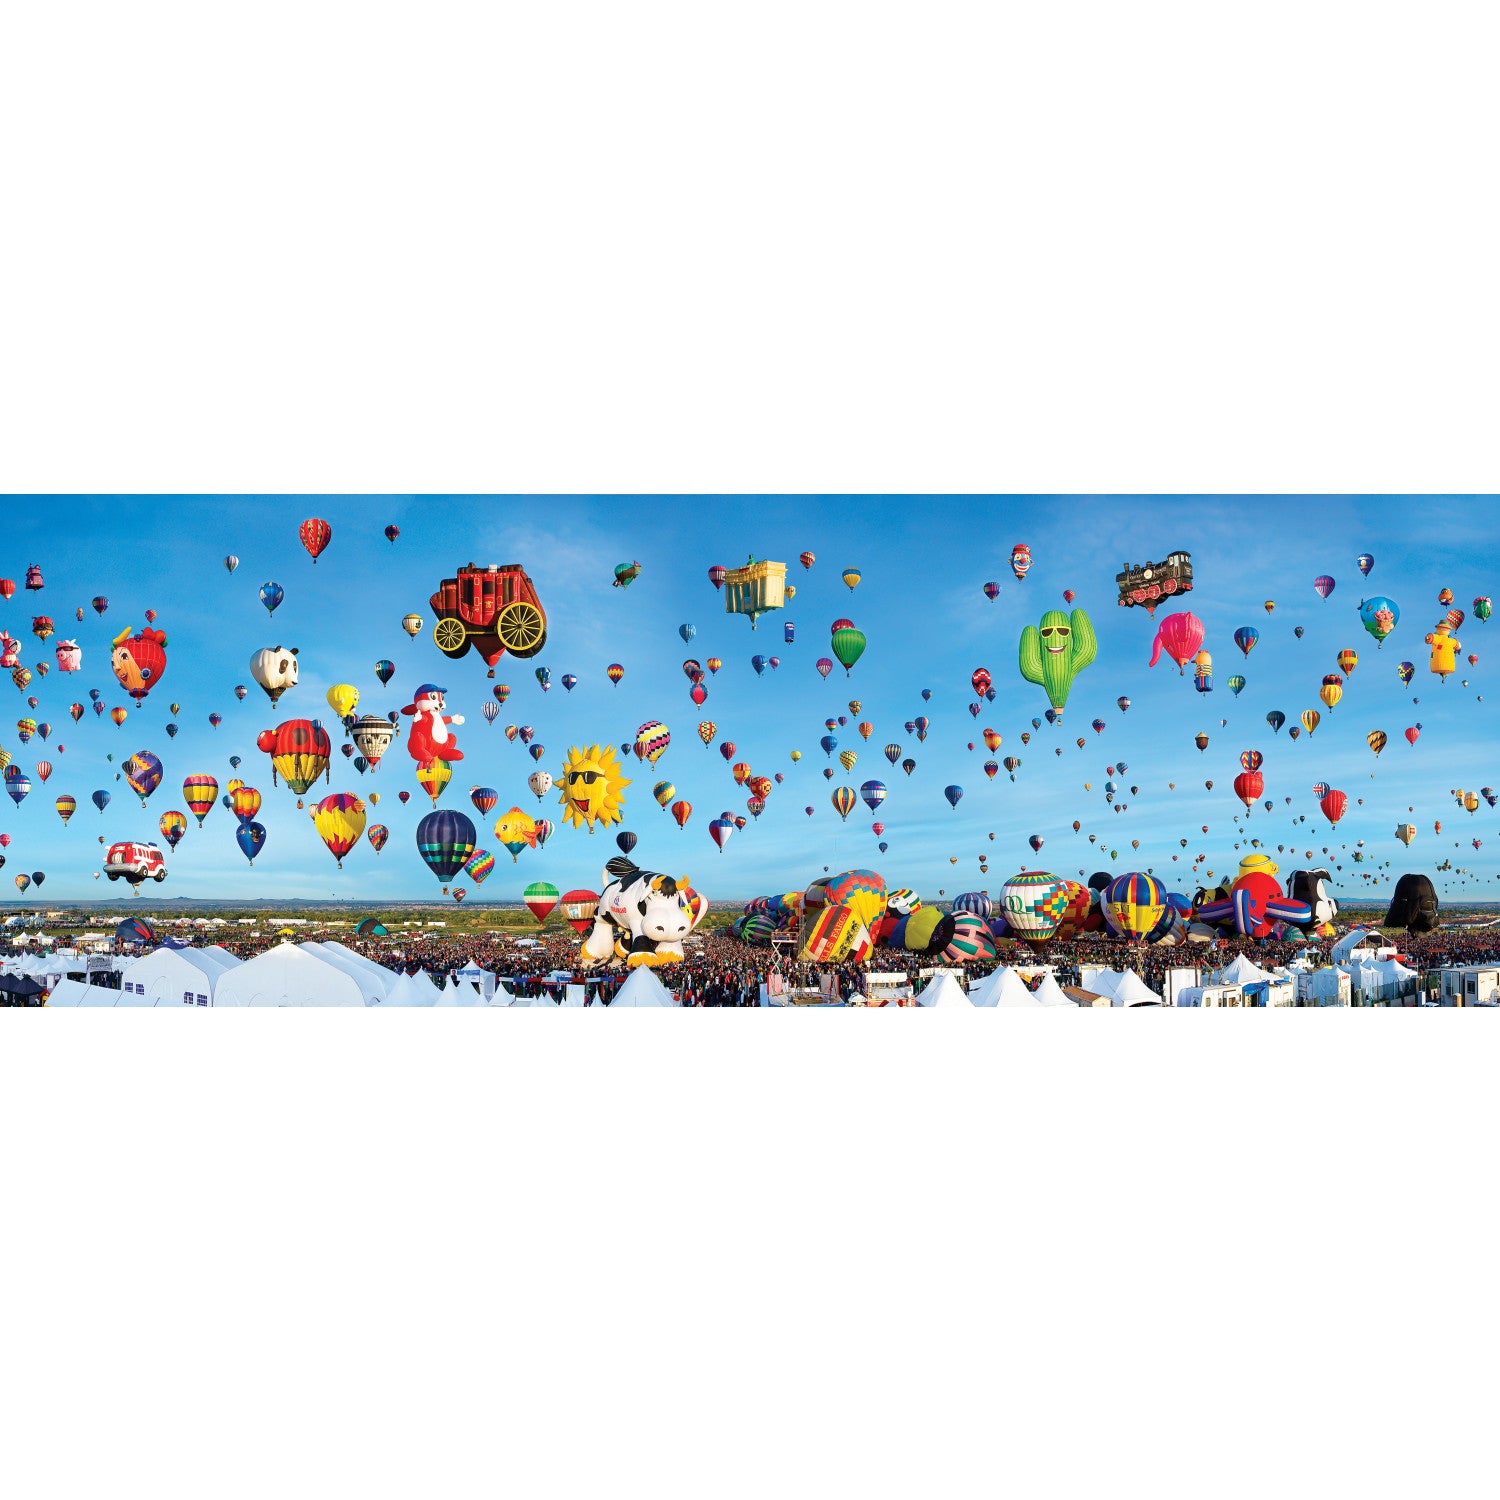 American Vista Panoramic - Albuquerque Balloons 1000 Piece Puzzle